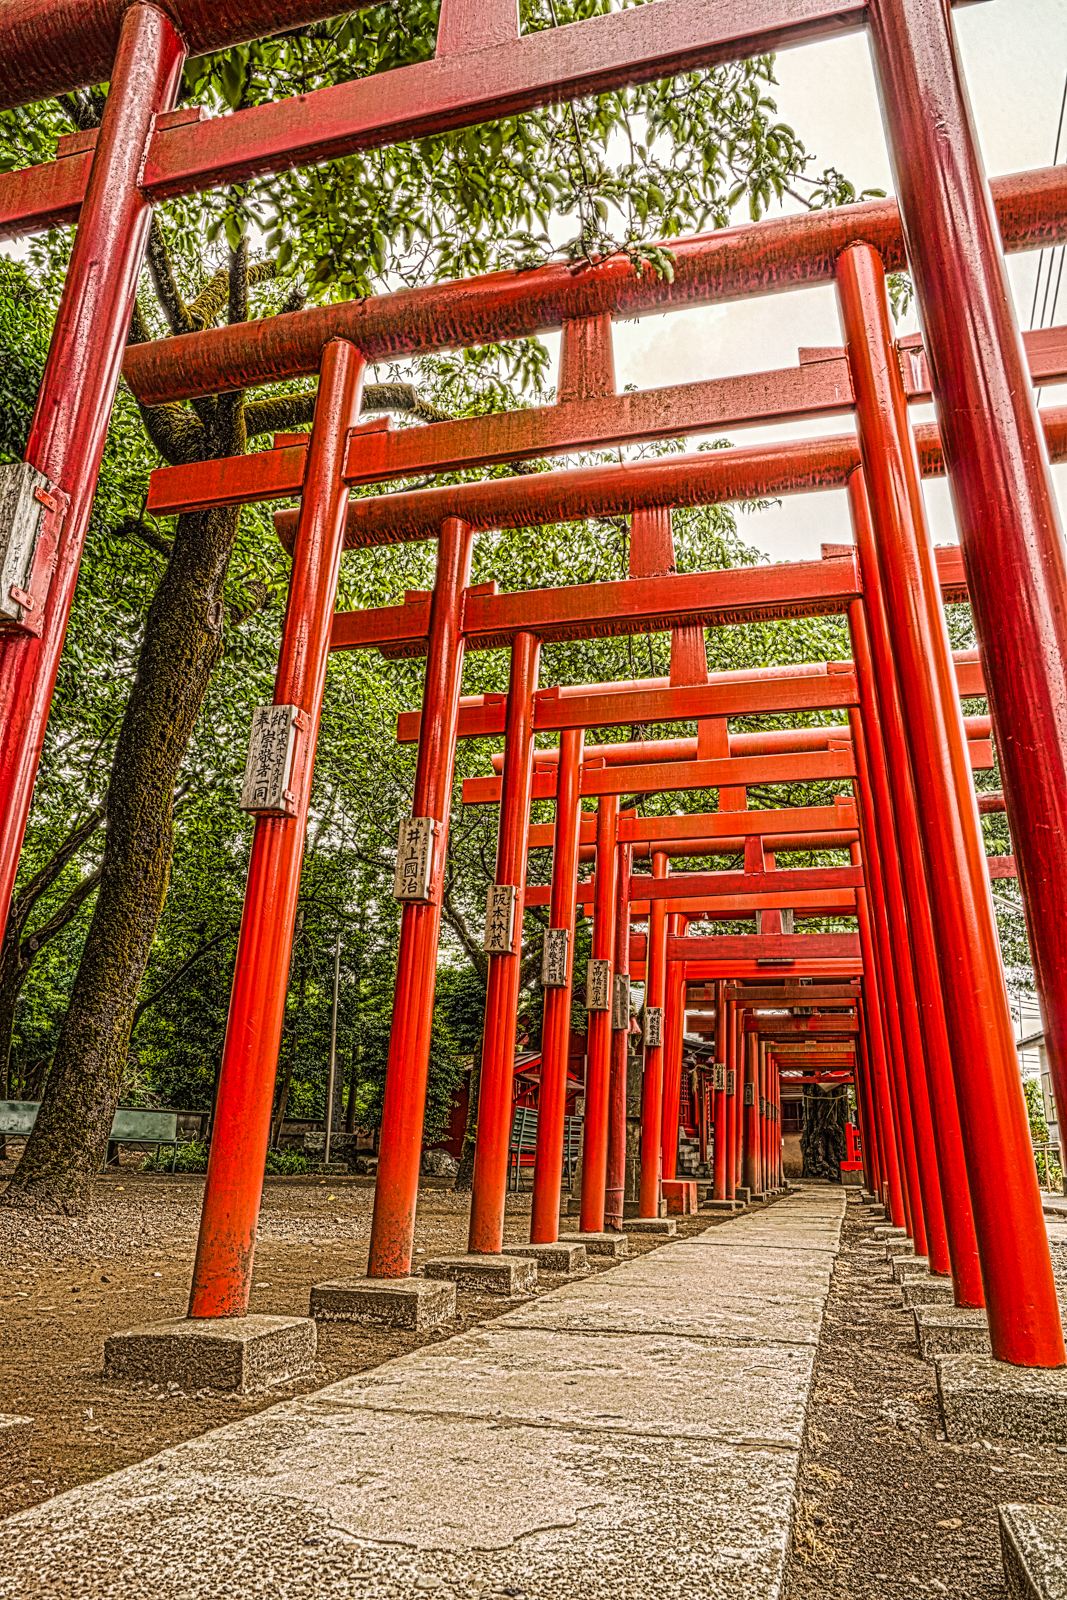 笠森稲荷神社、赤鳥居のHDR写真